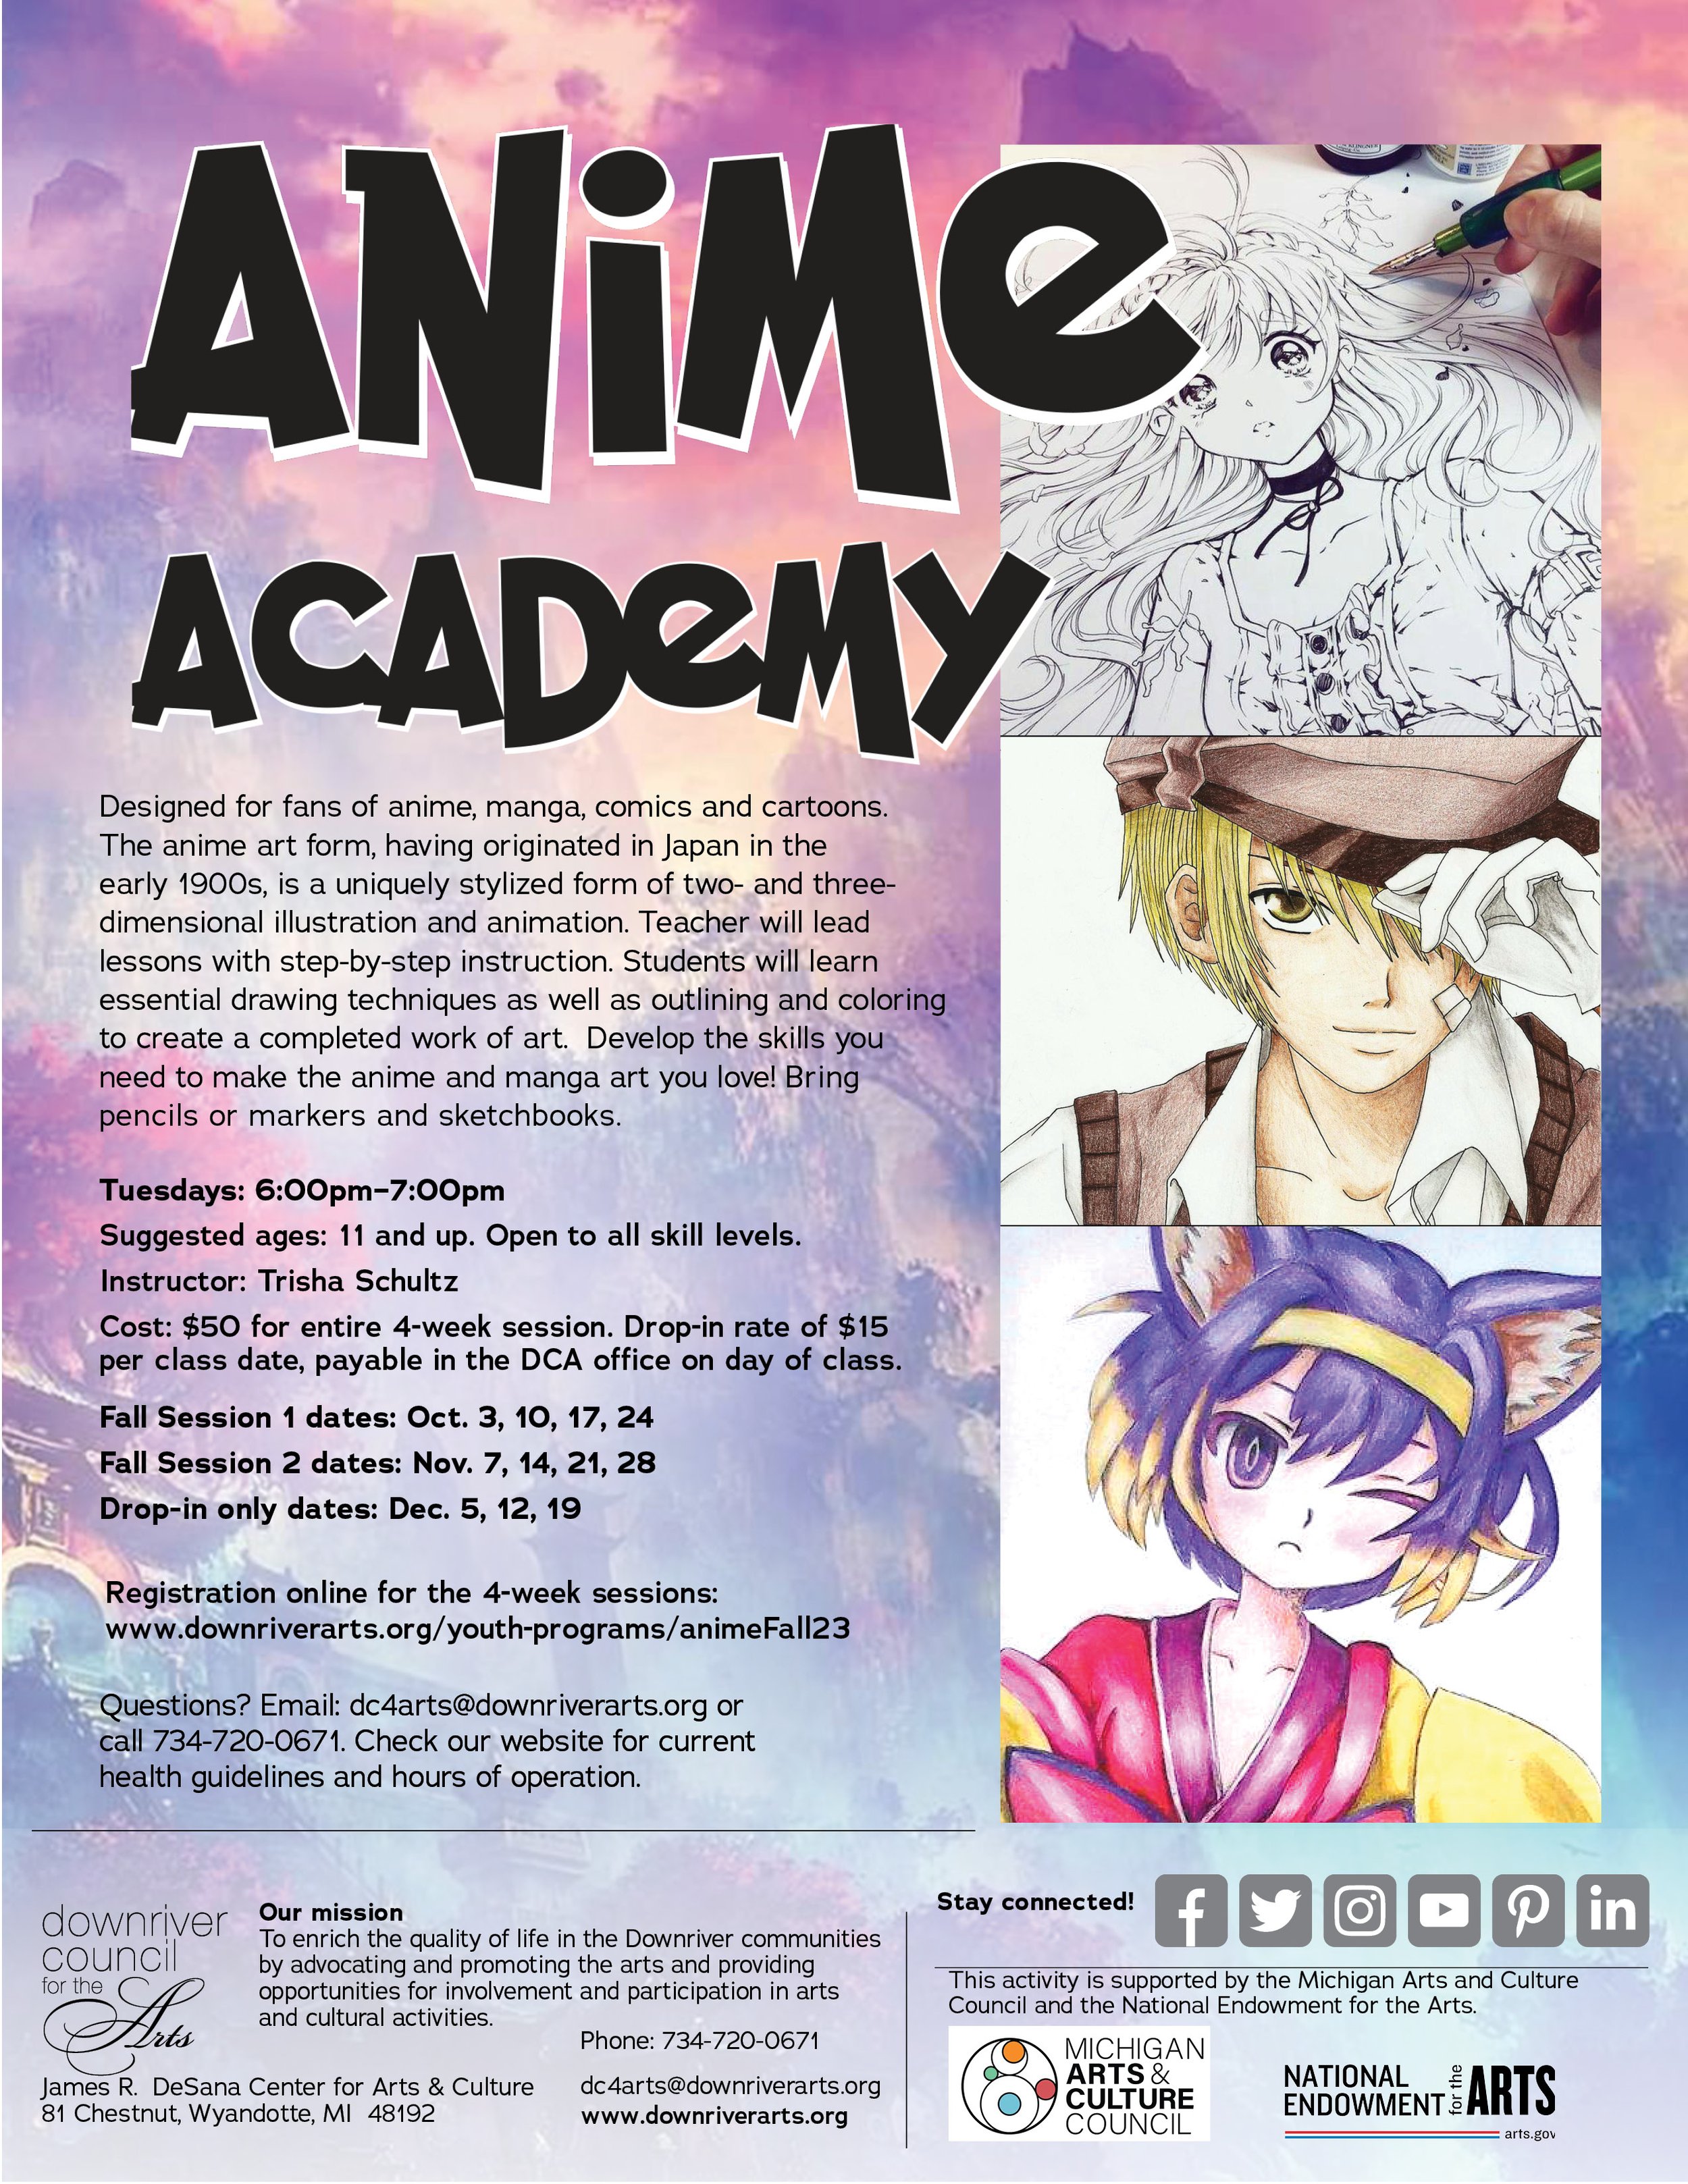 The Anime Academy